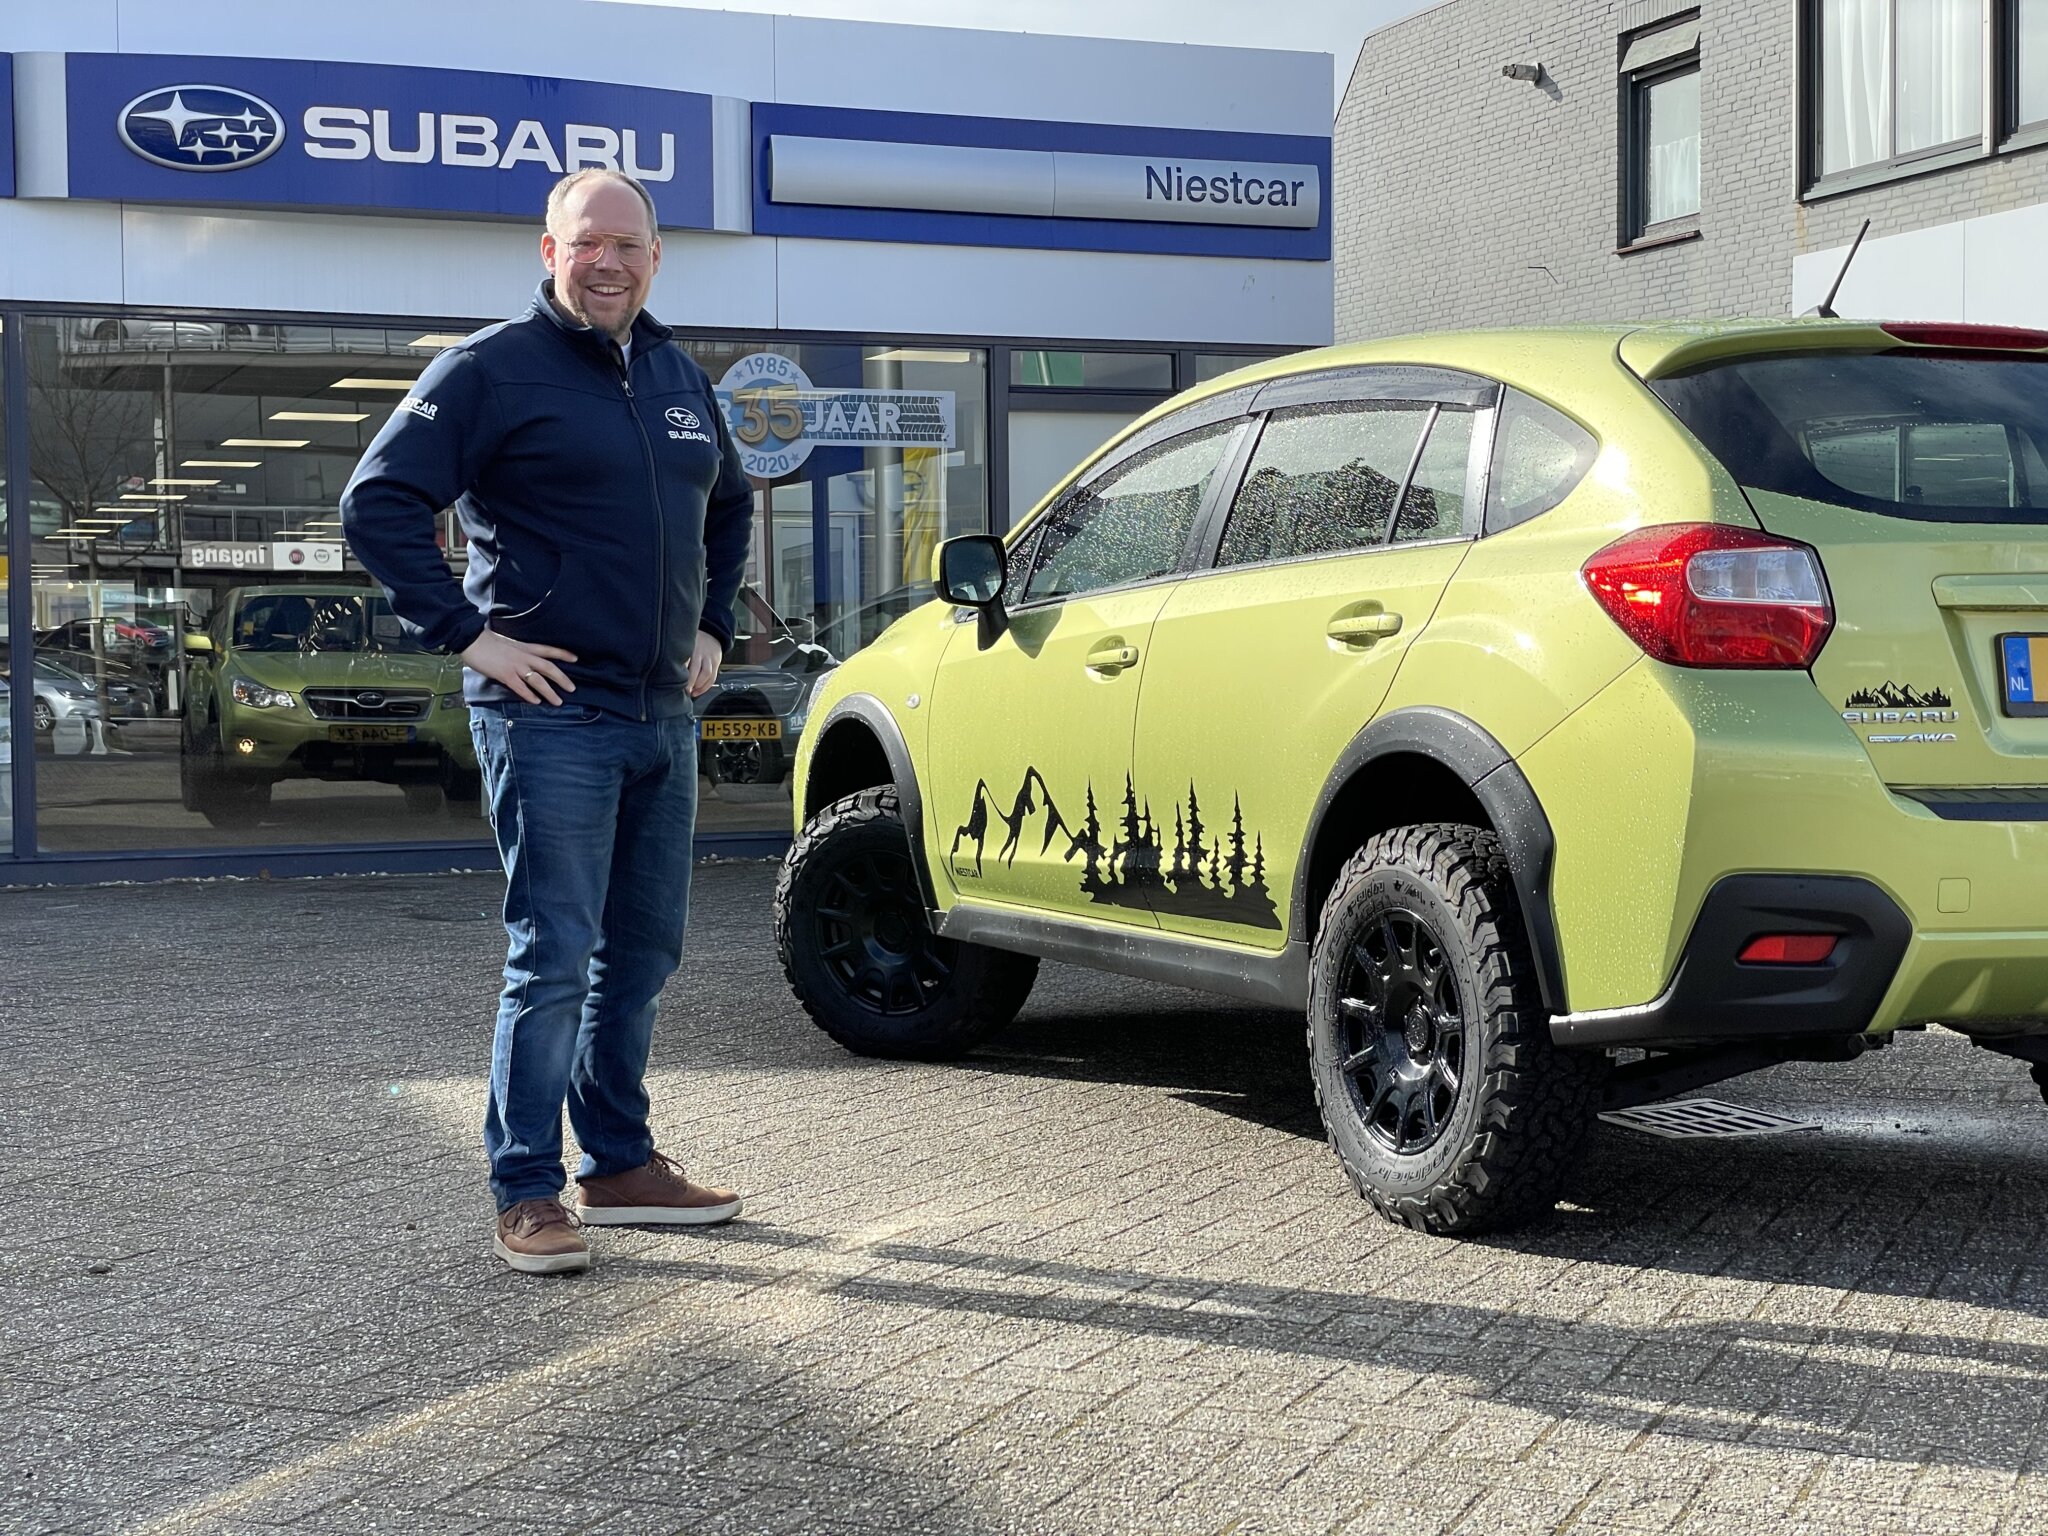 Maak je Subaru helemaal Custom-Made met de liftkits van Readylift bij Subaru dealer Niestcar in Heemskerk. Maak uw eigen adventure!